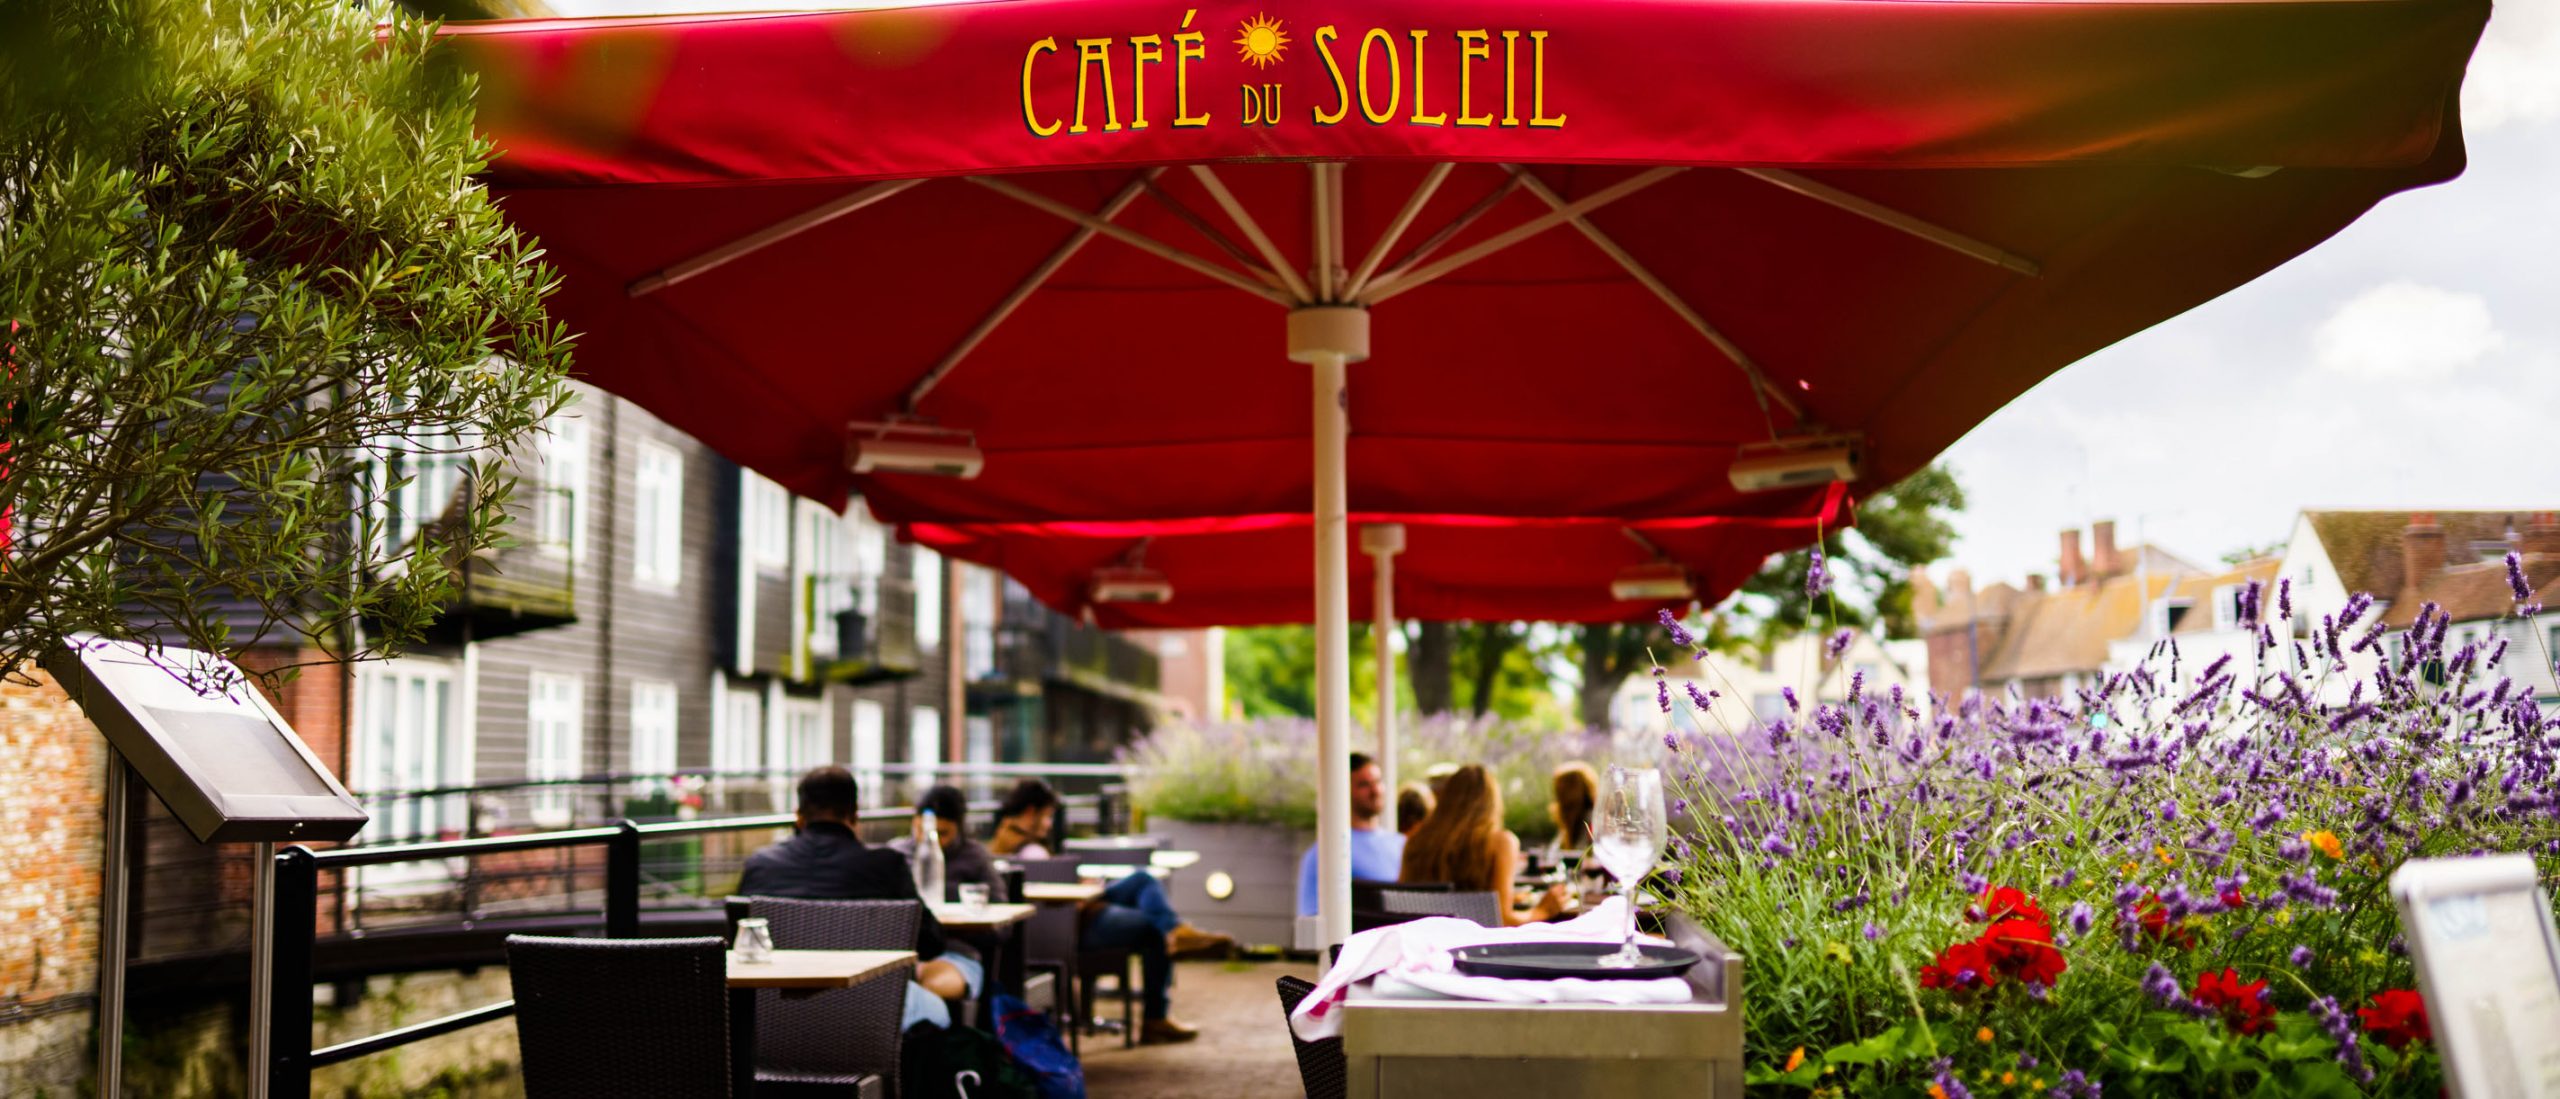 Home - Cafe Du Soleil